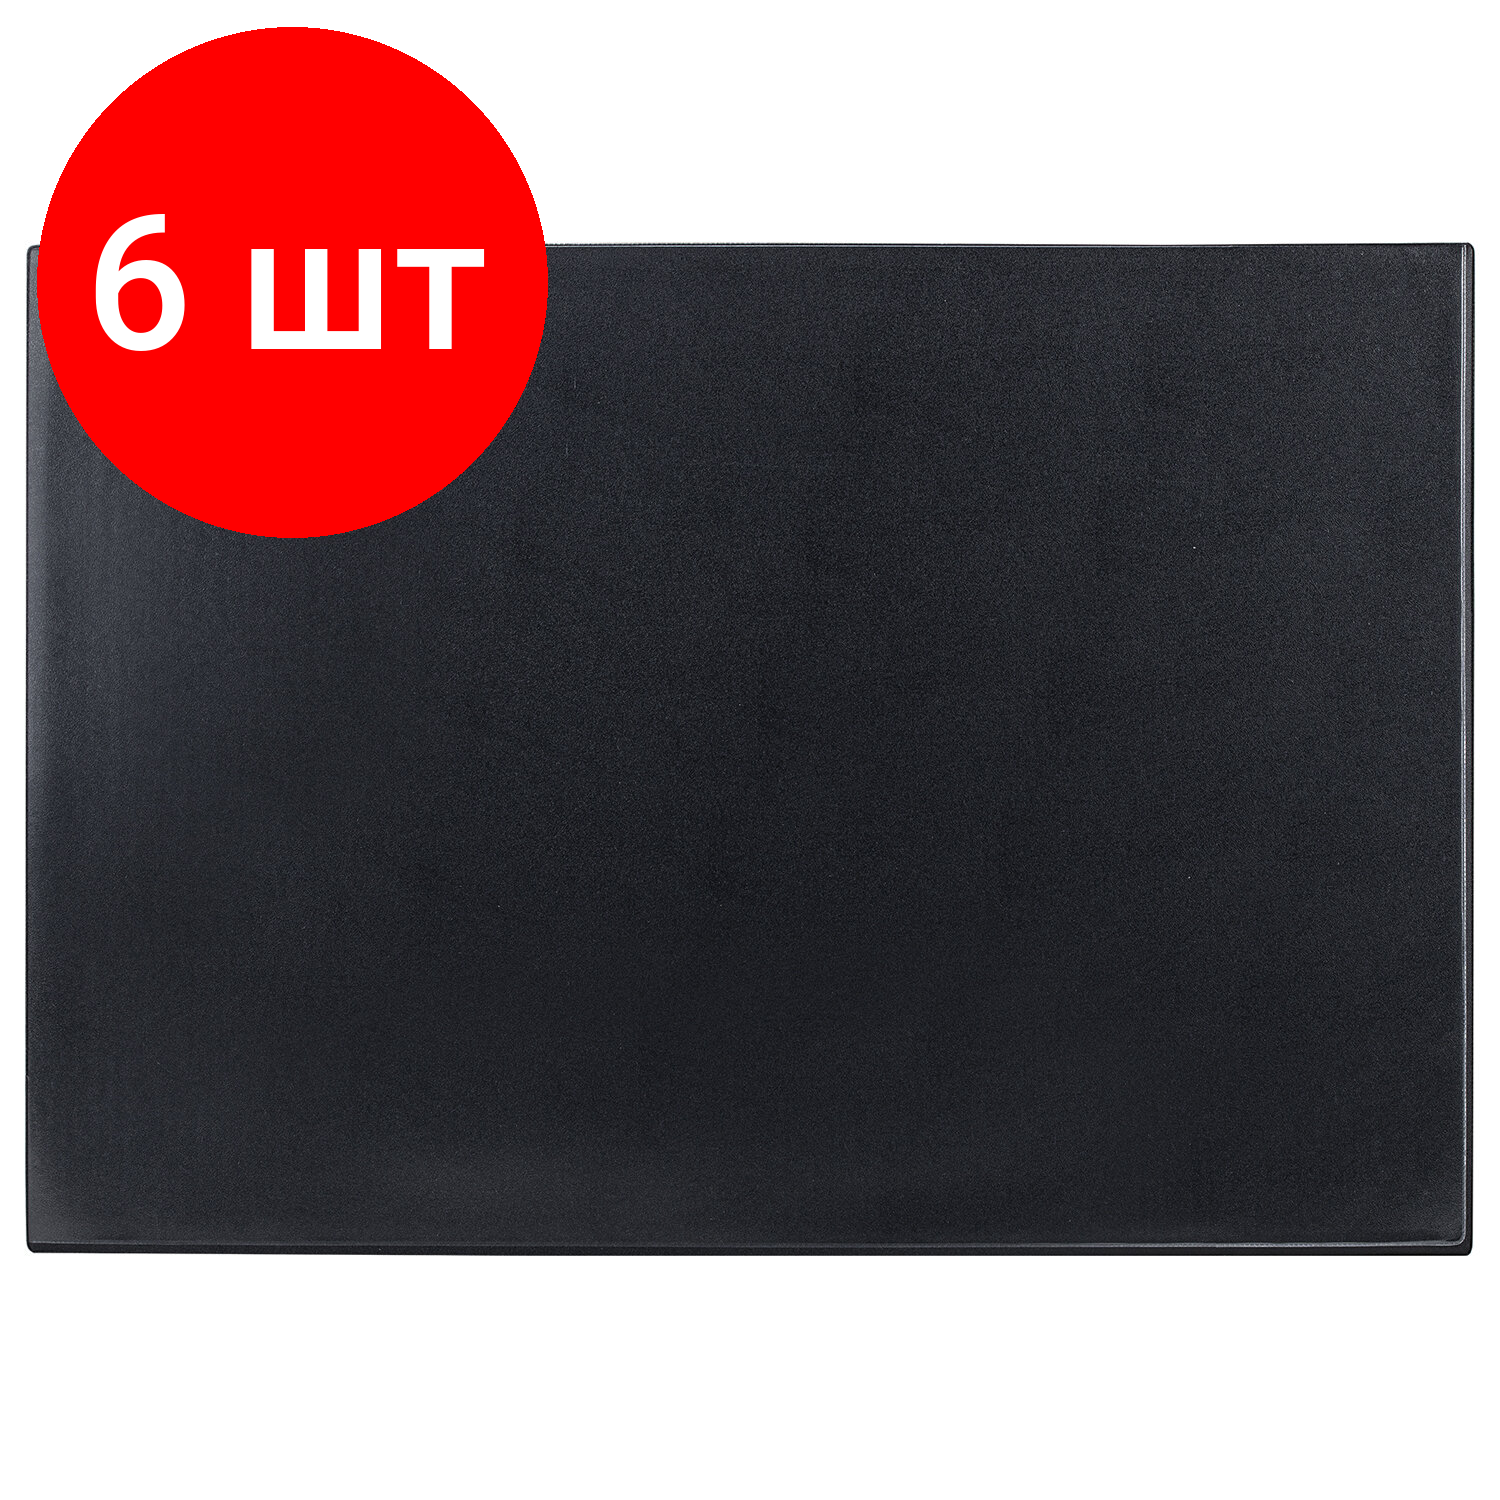 Комплект 6 шт, Коврик-подкладка настольный для письма (650х450 мм), с прозрачным карманом, черный, BRAUBERG, 236775